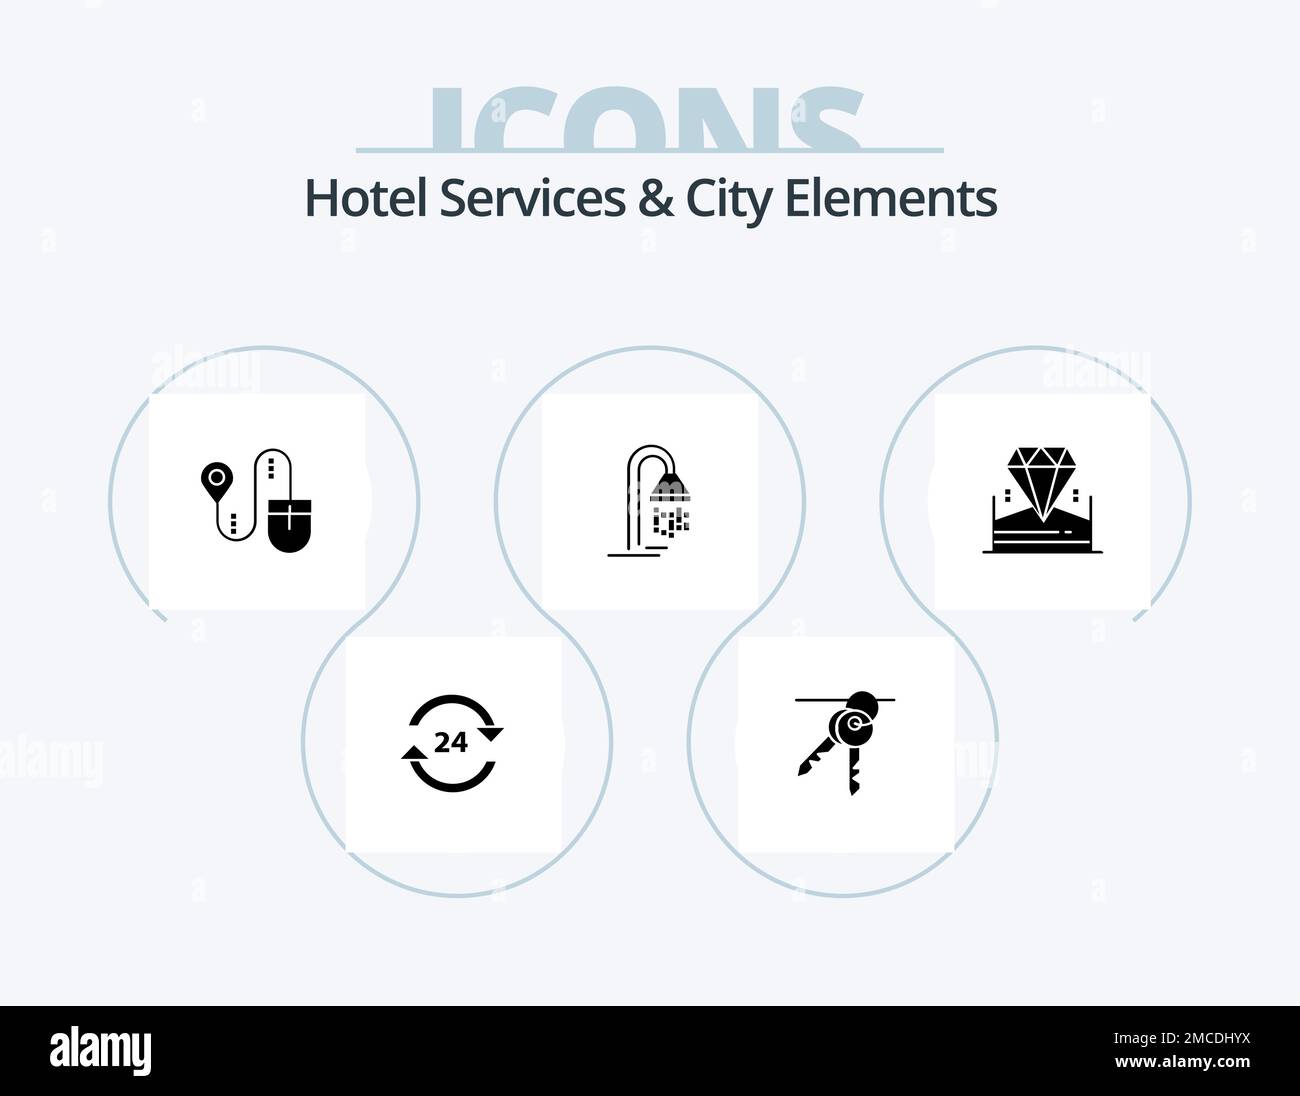 Services de l'hôtel et City Elements Glyph Icon Pack 5 Icon Design. douche. hôtel. chambre. salle de bains. rechercher Illustration de Vecteur